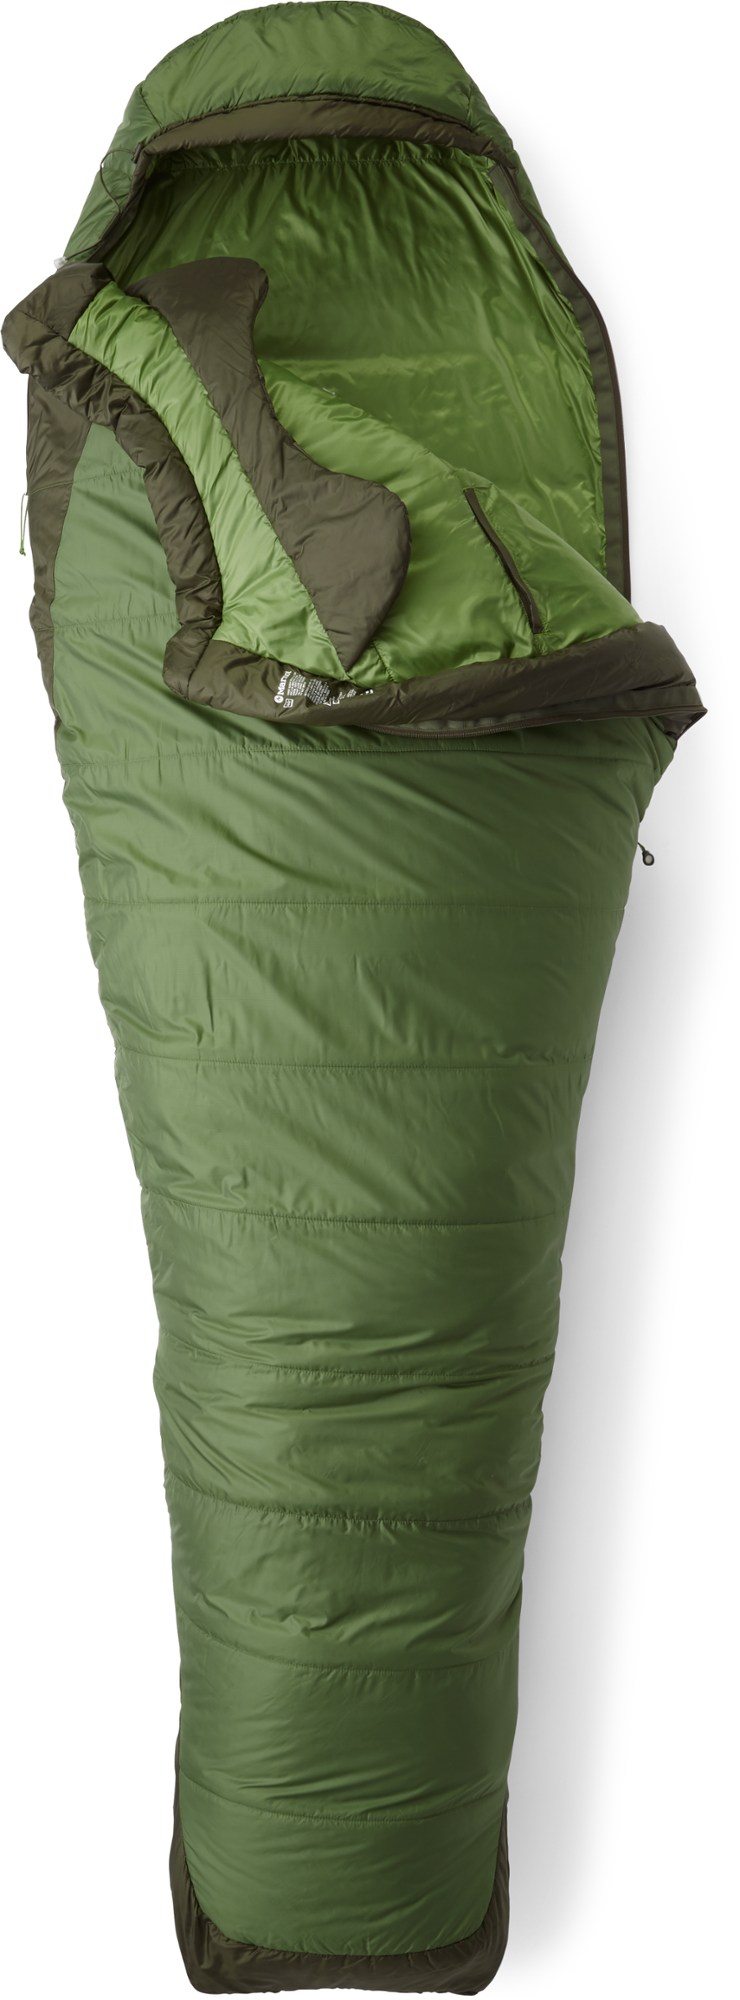 Спальный мешок Trestles Elite Eco 30 - мужской Marmot, зеленый